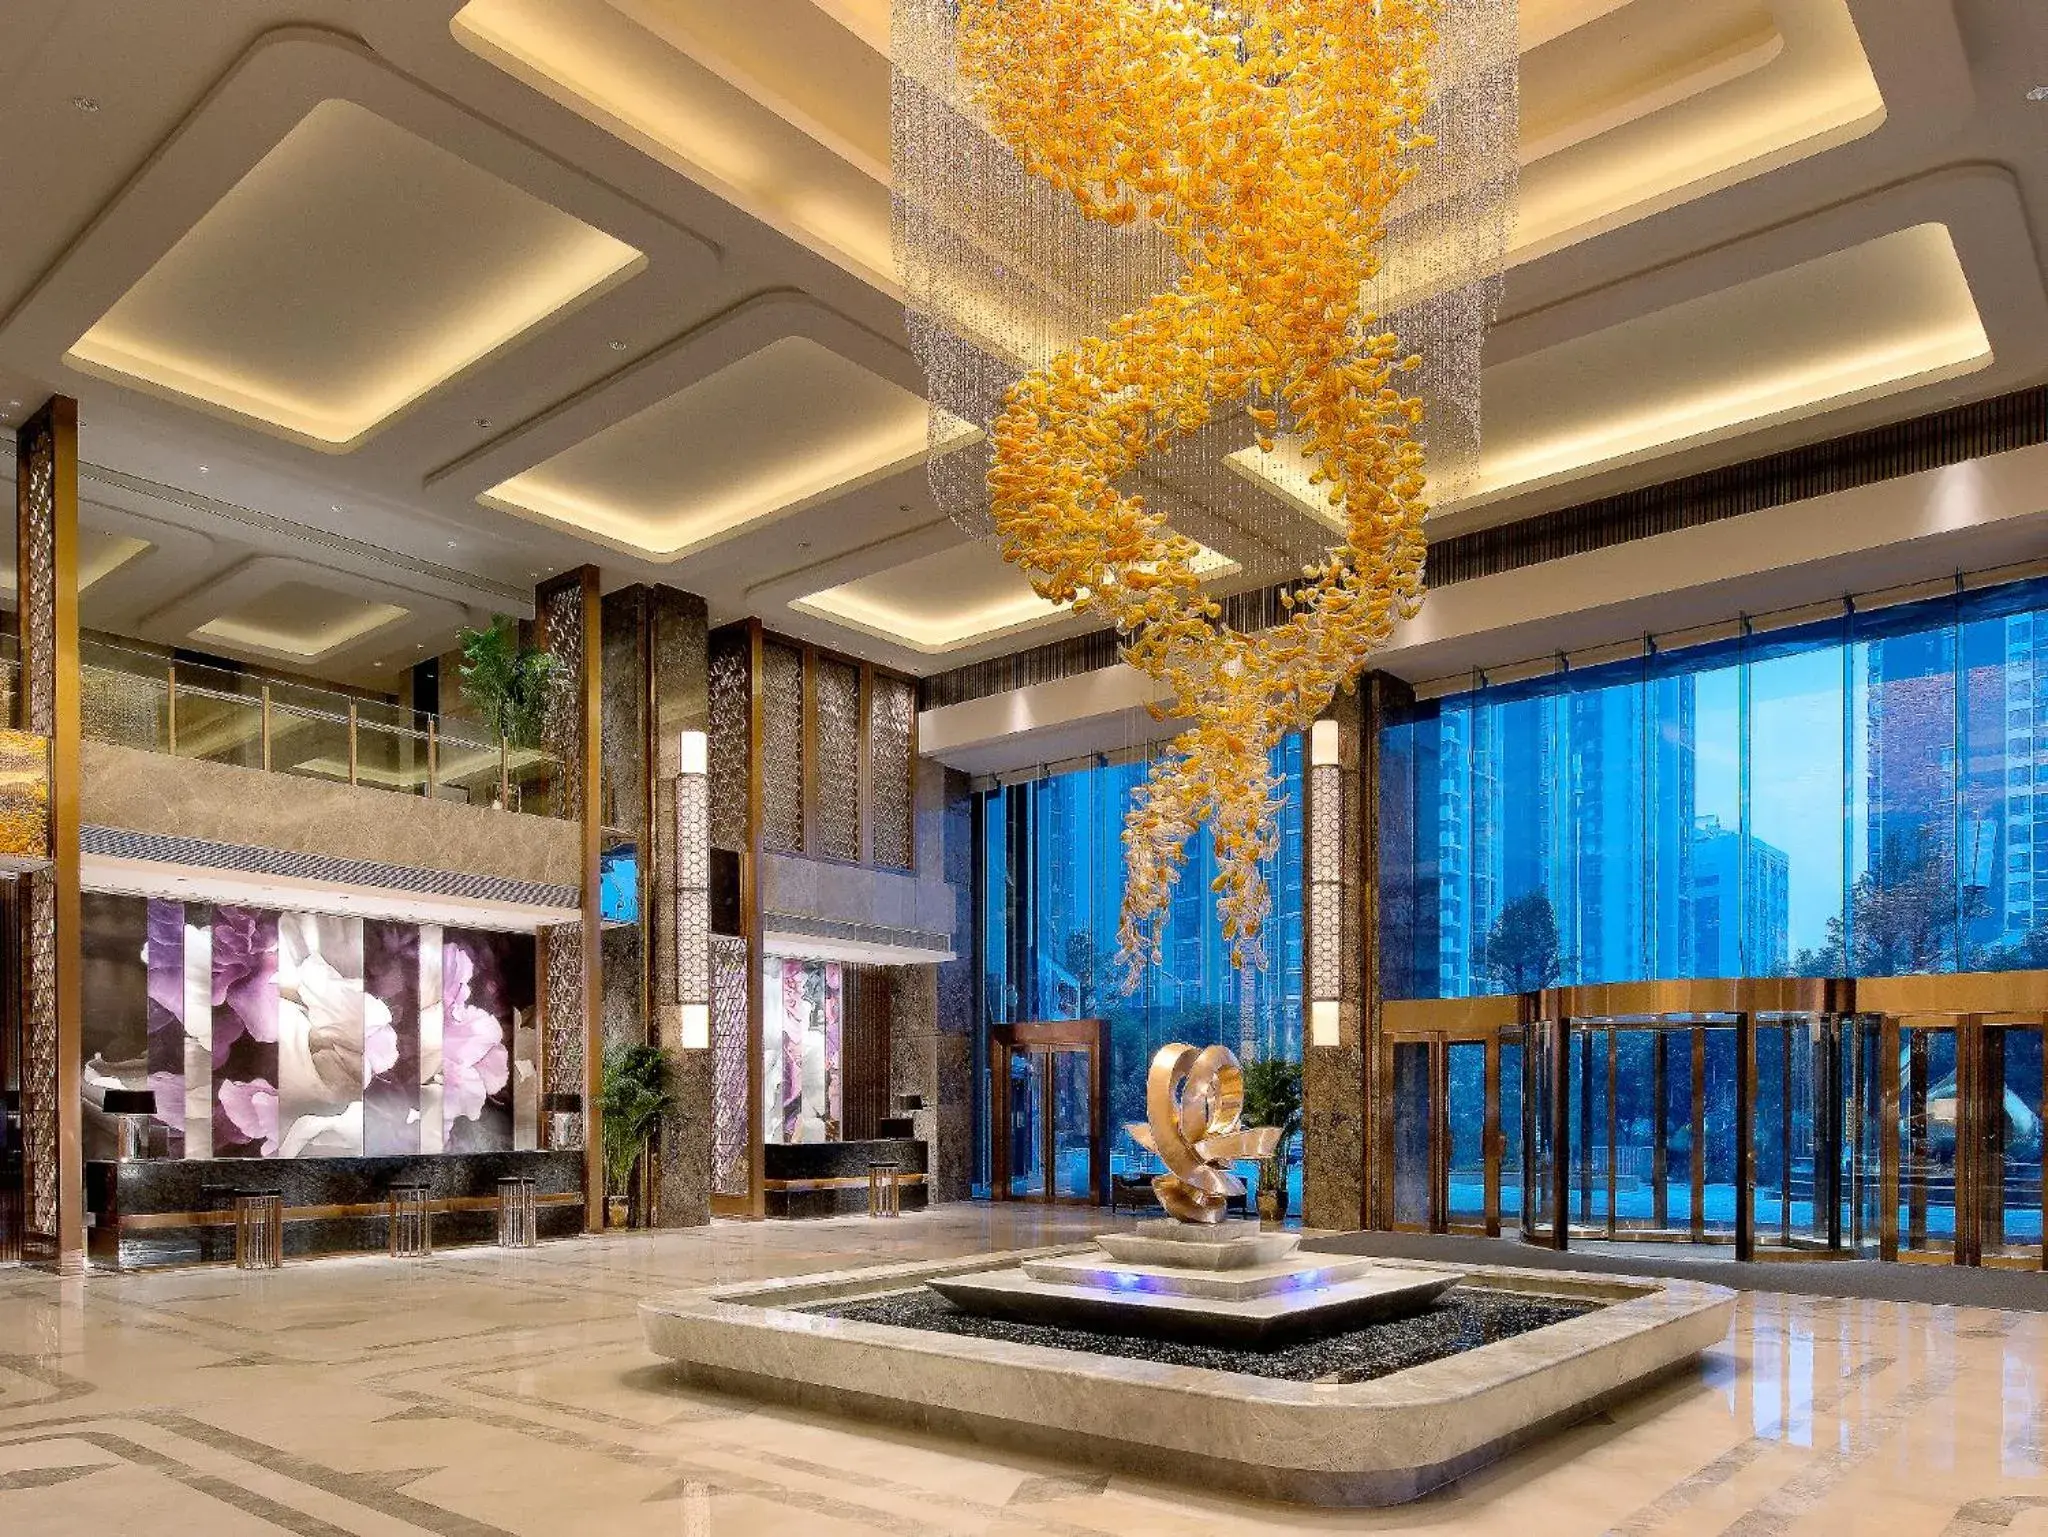 Lobby or reception in Kempinski Hotel Changsha